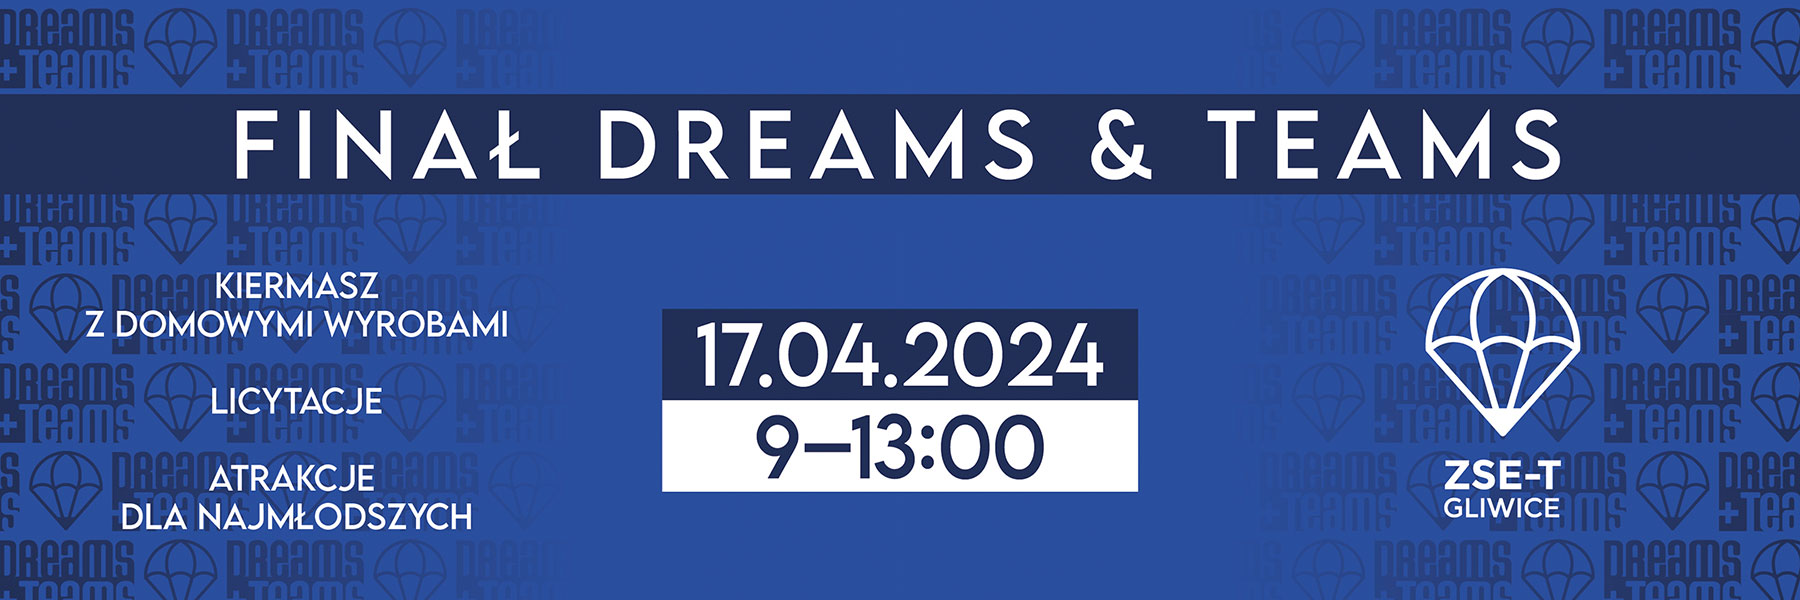 informacja o akcji dreams teams 17.04.2024 9.00-13.00, AKCJE, LICYTACJE, ATRAKCJE